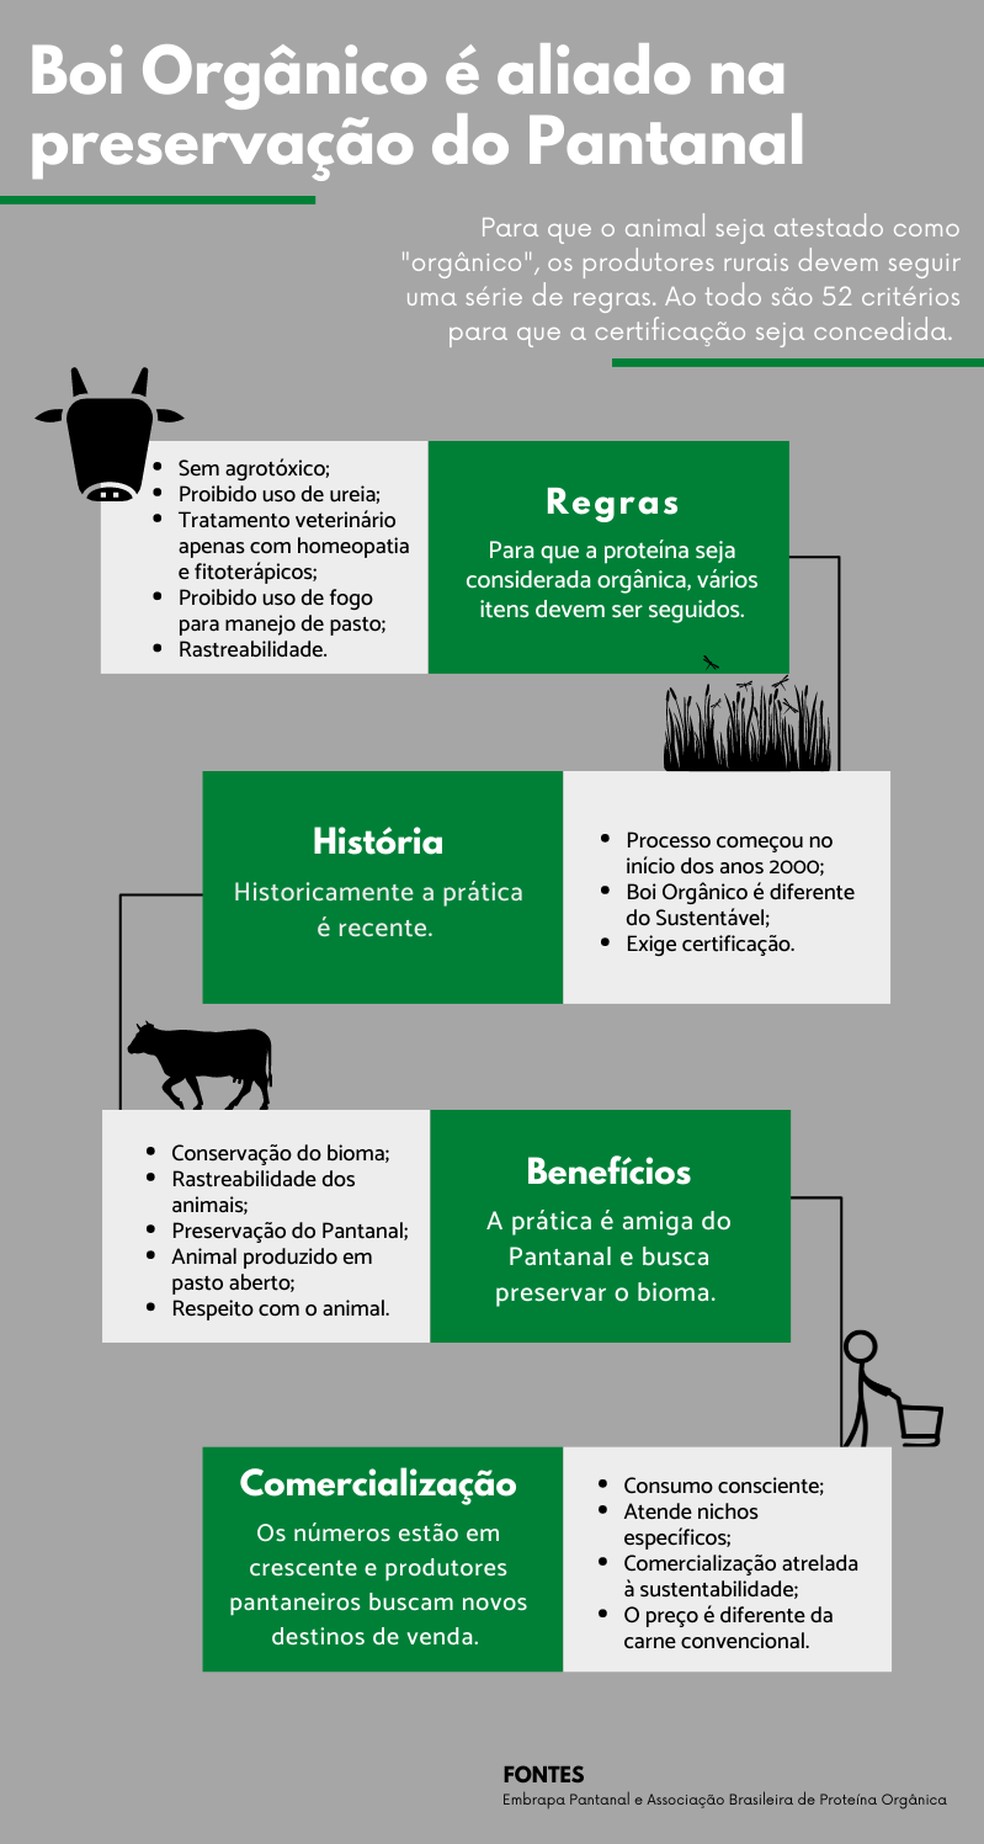 Para especialistas e produtores rurais, boi orgânico ajuda a preservar bioma.   — Foto: Informações: ABPO e Embrapa Pantanal/ Infográfico: José Câmara